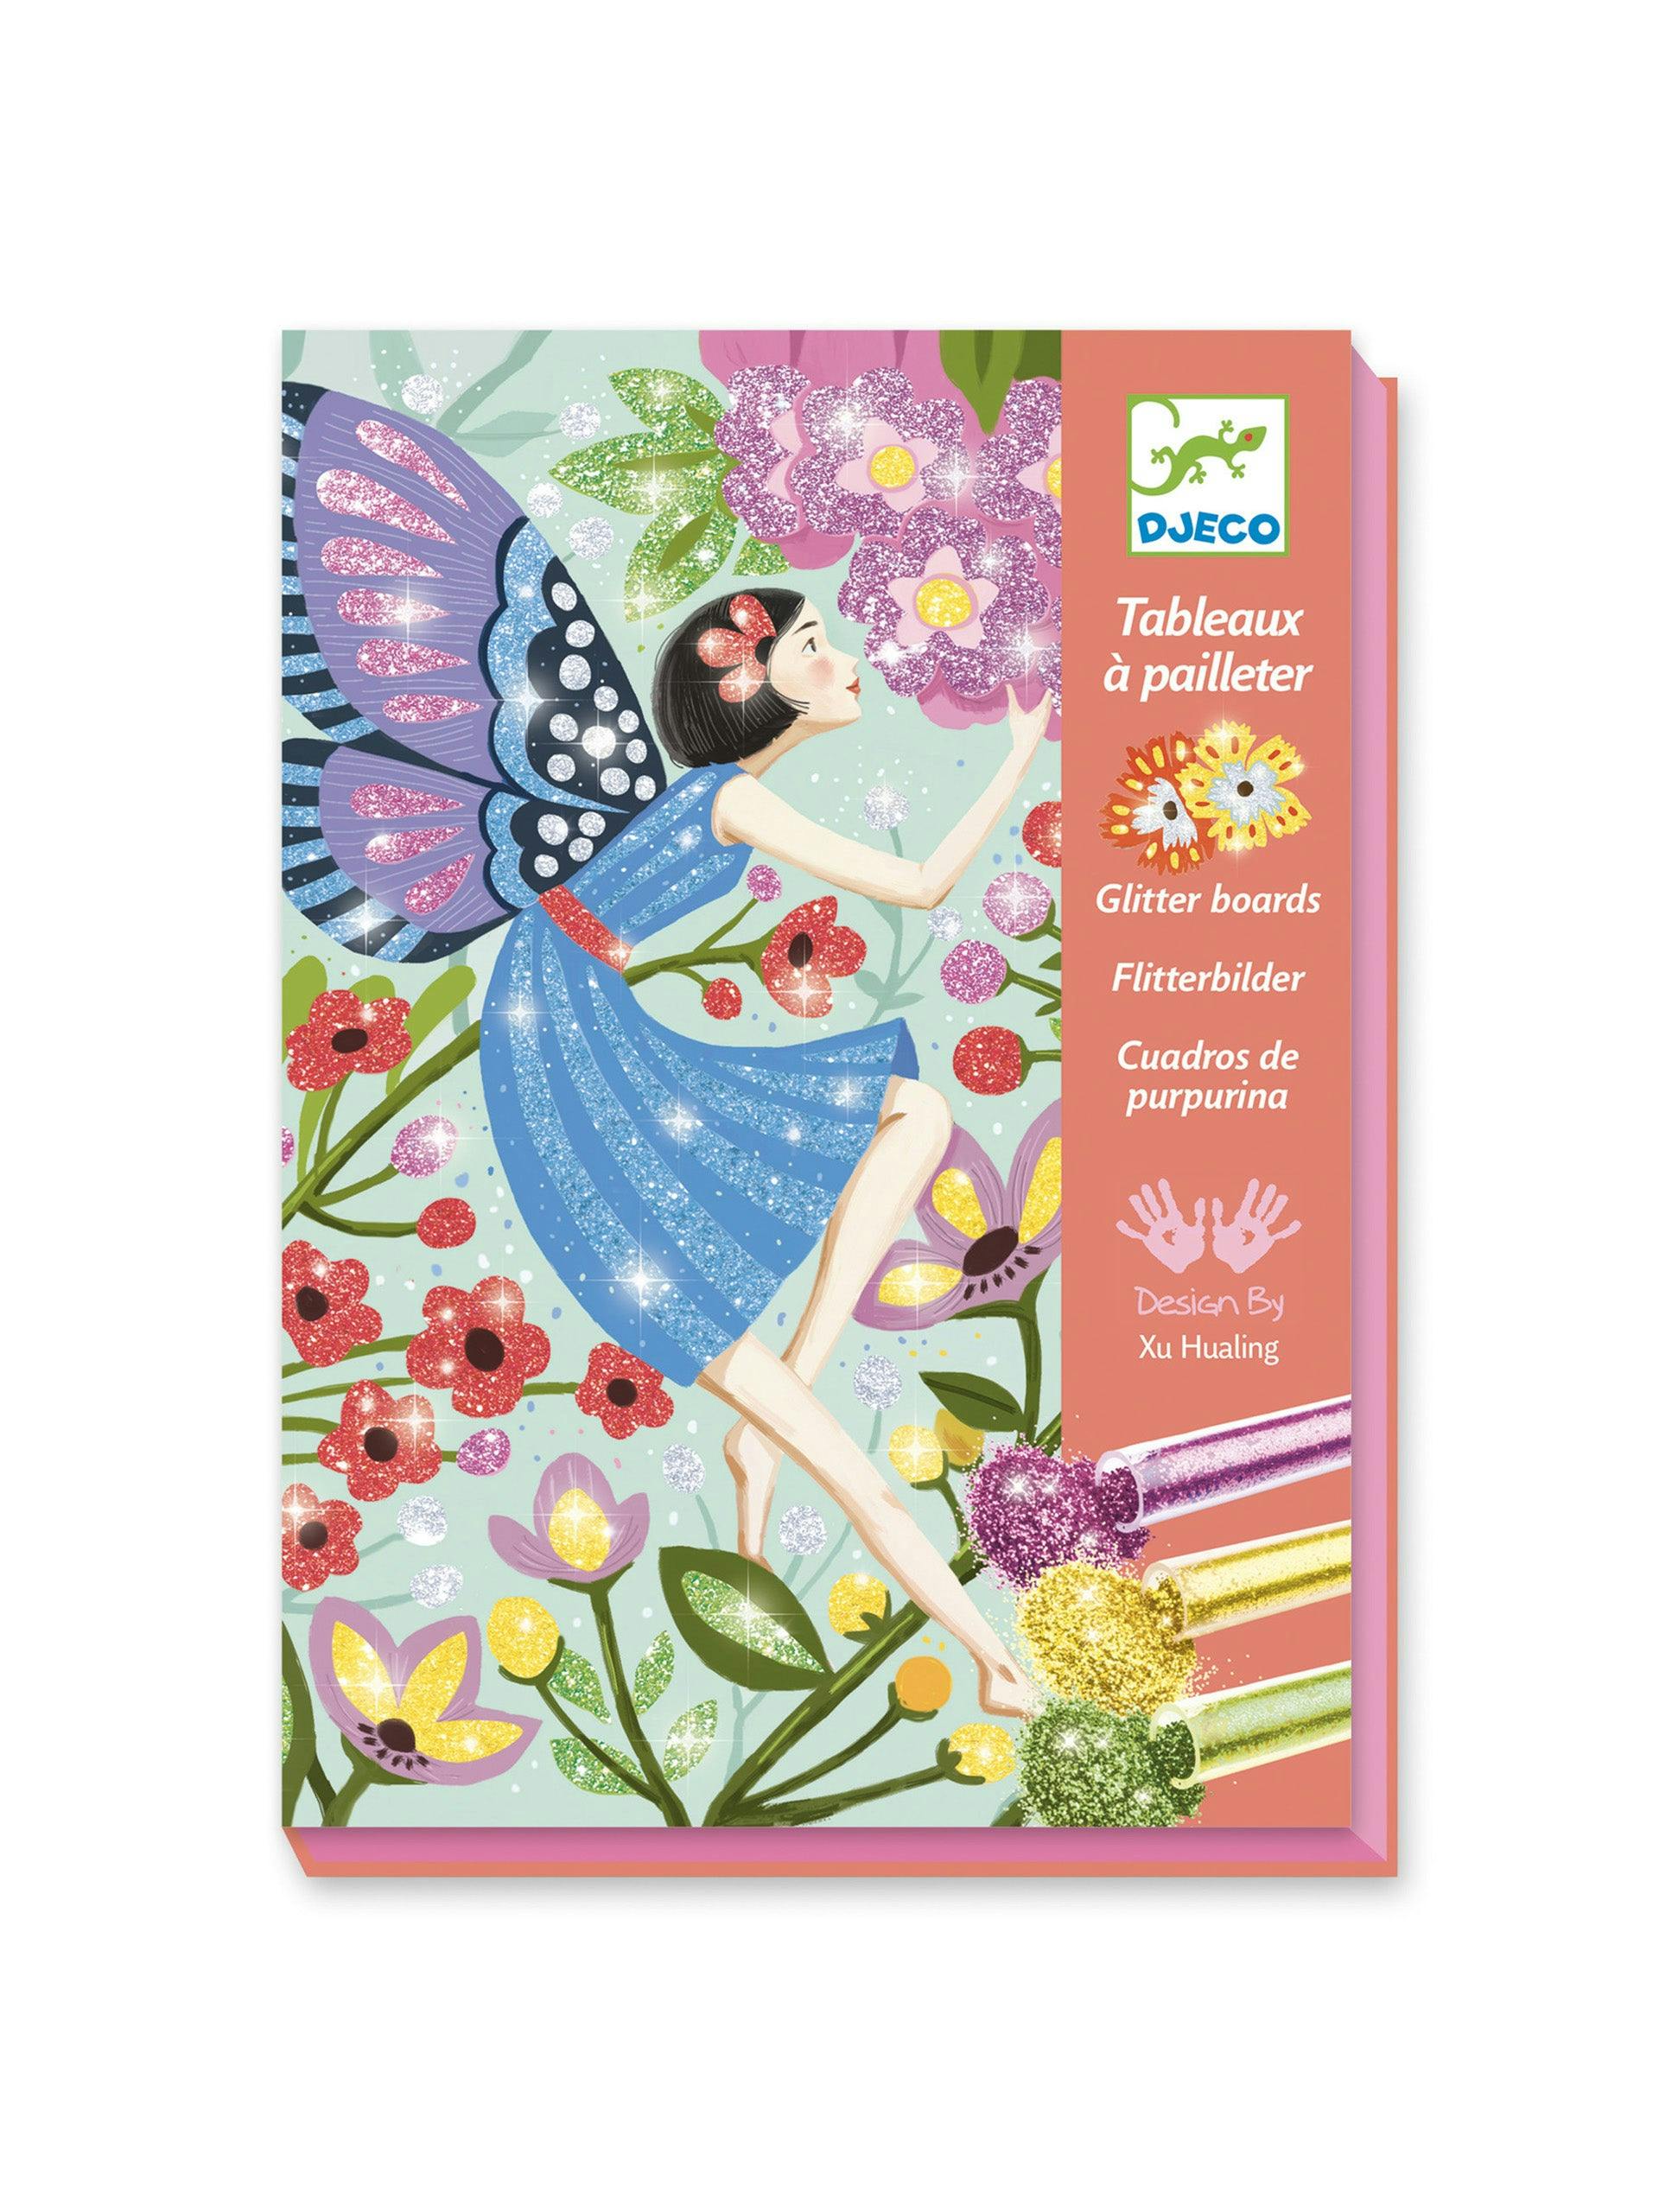 Fairy glitter painting kit